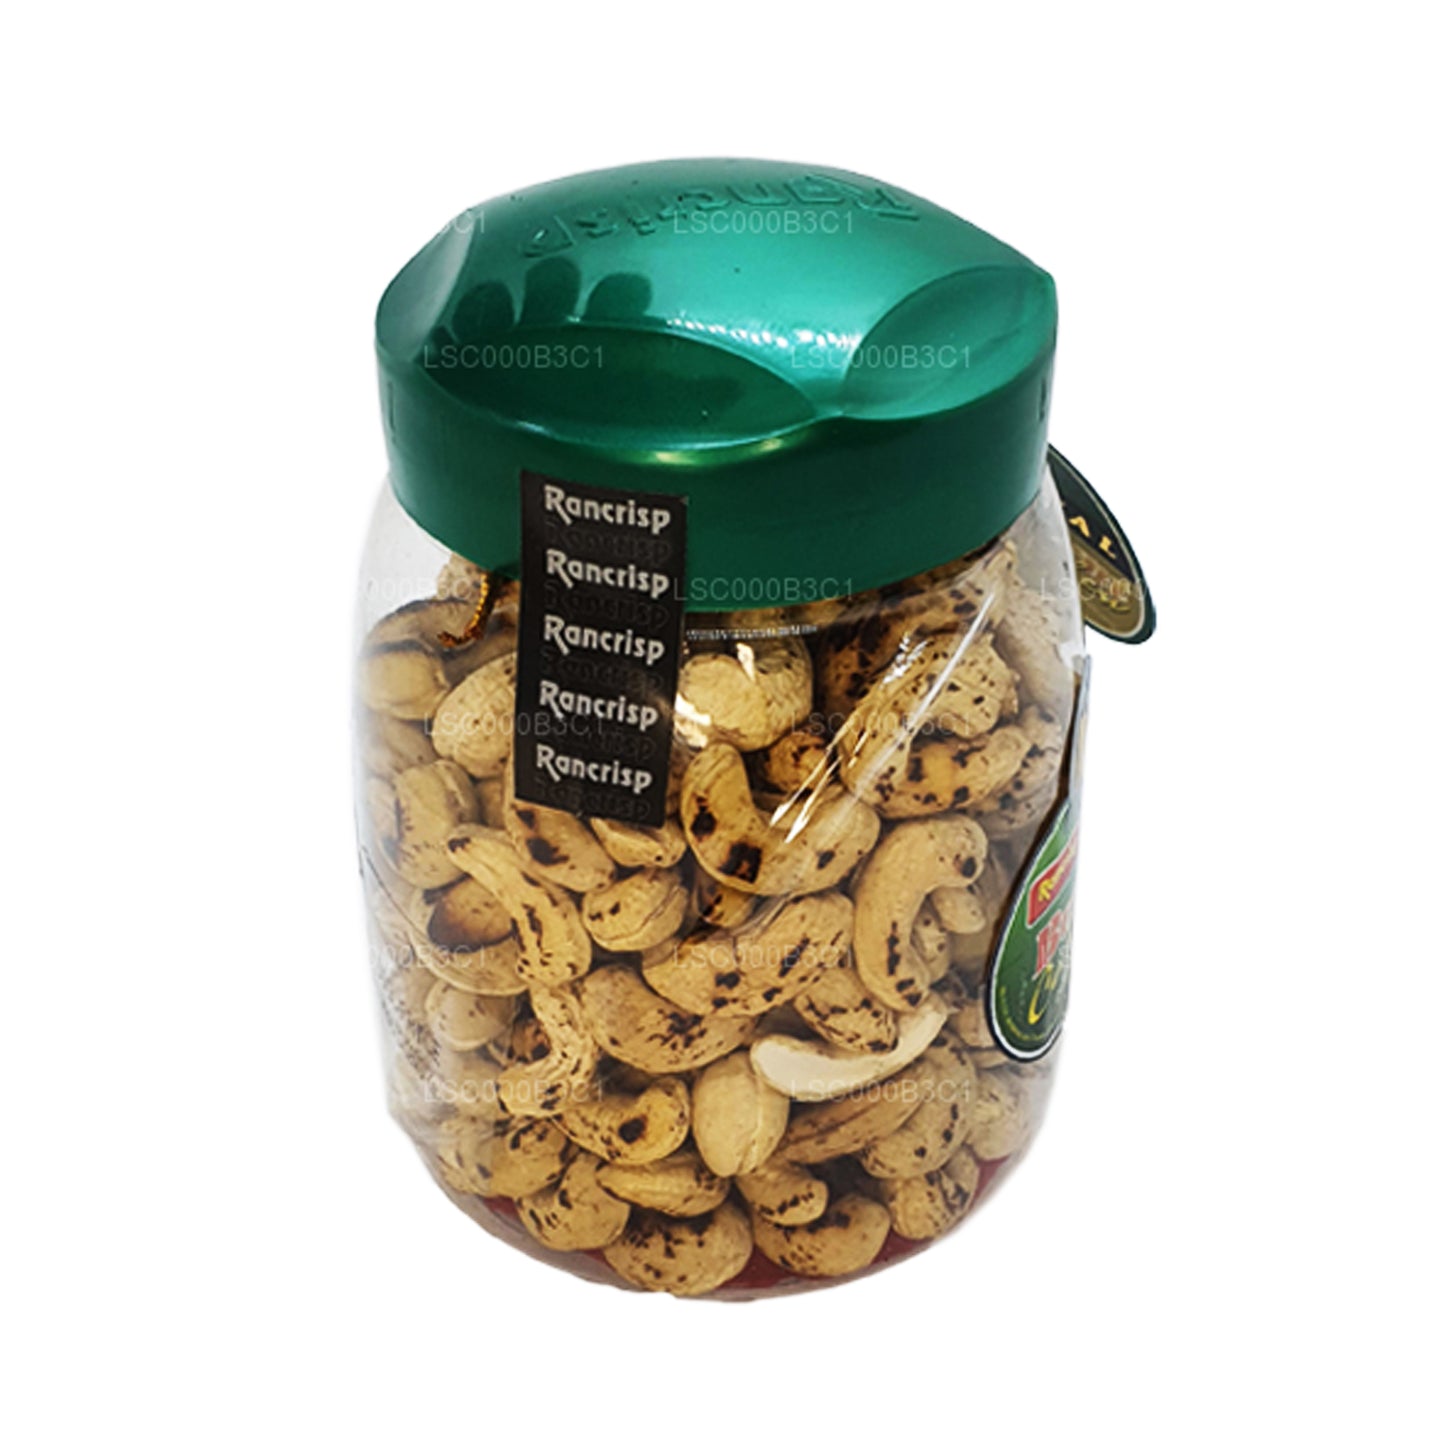 Rancrisp brændte cashewnødder (450g)